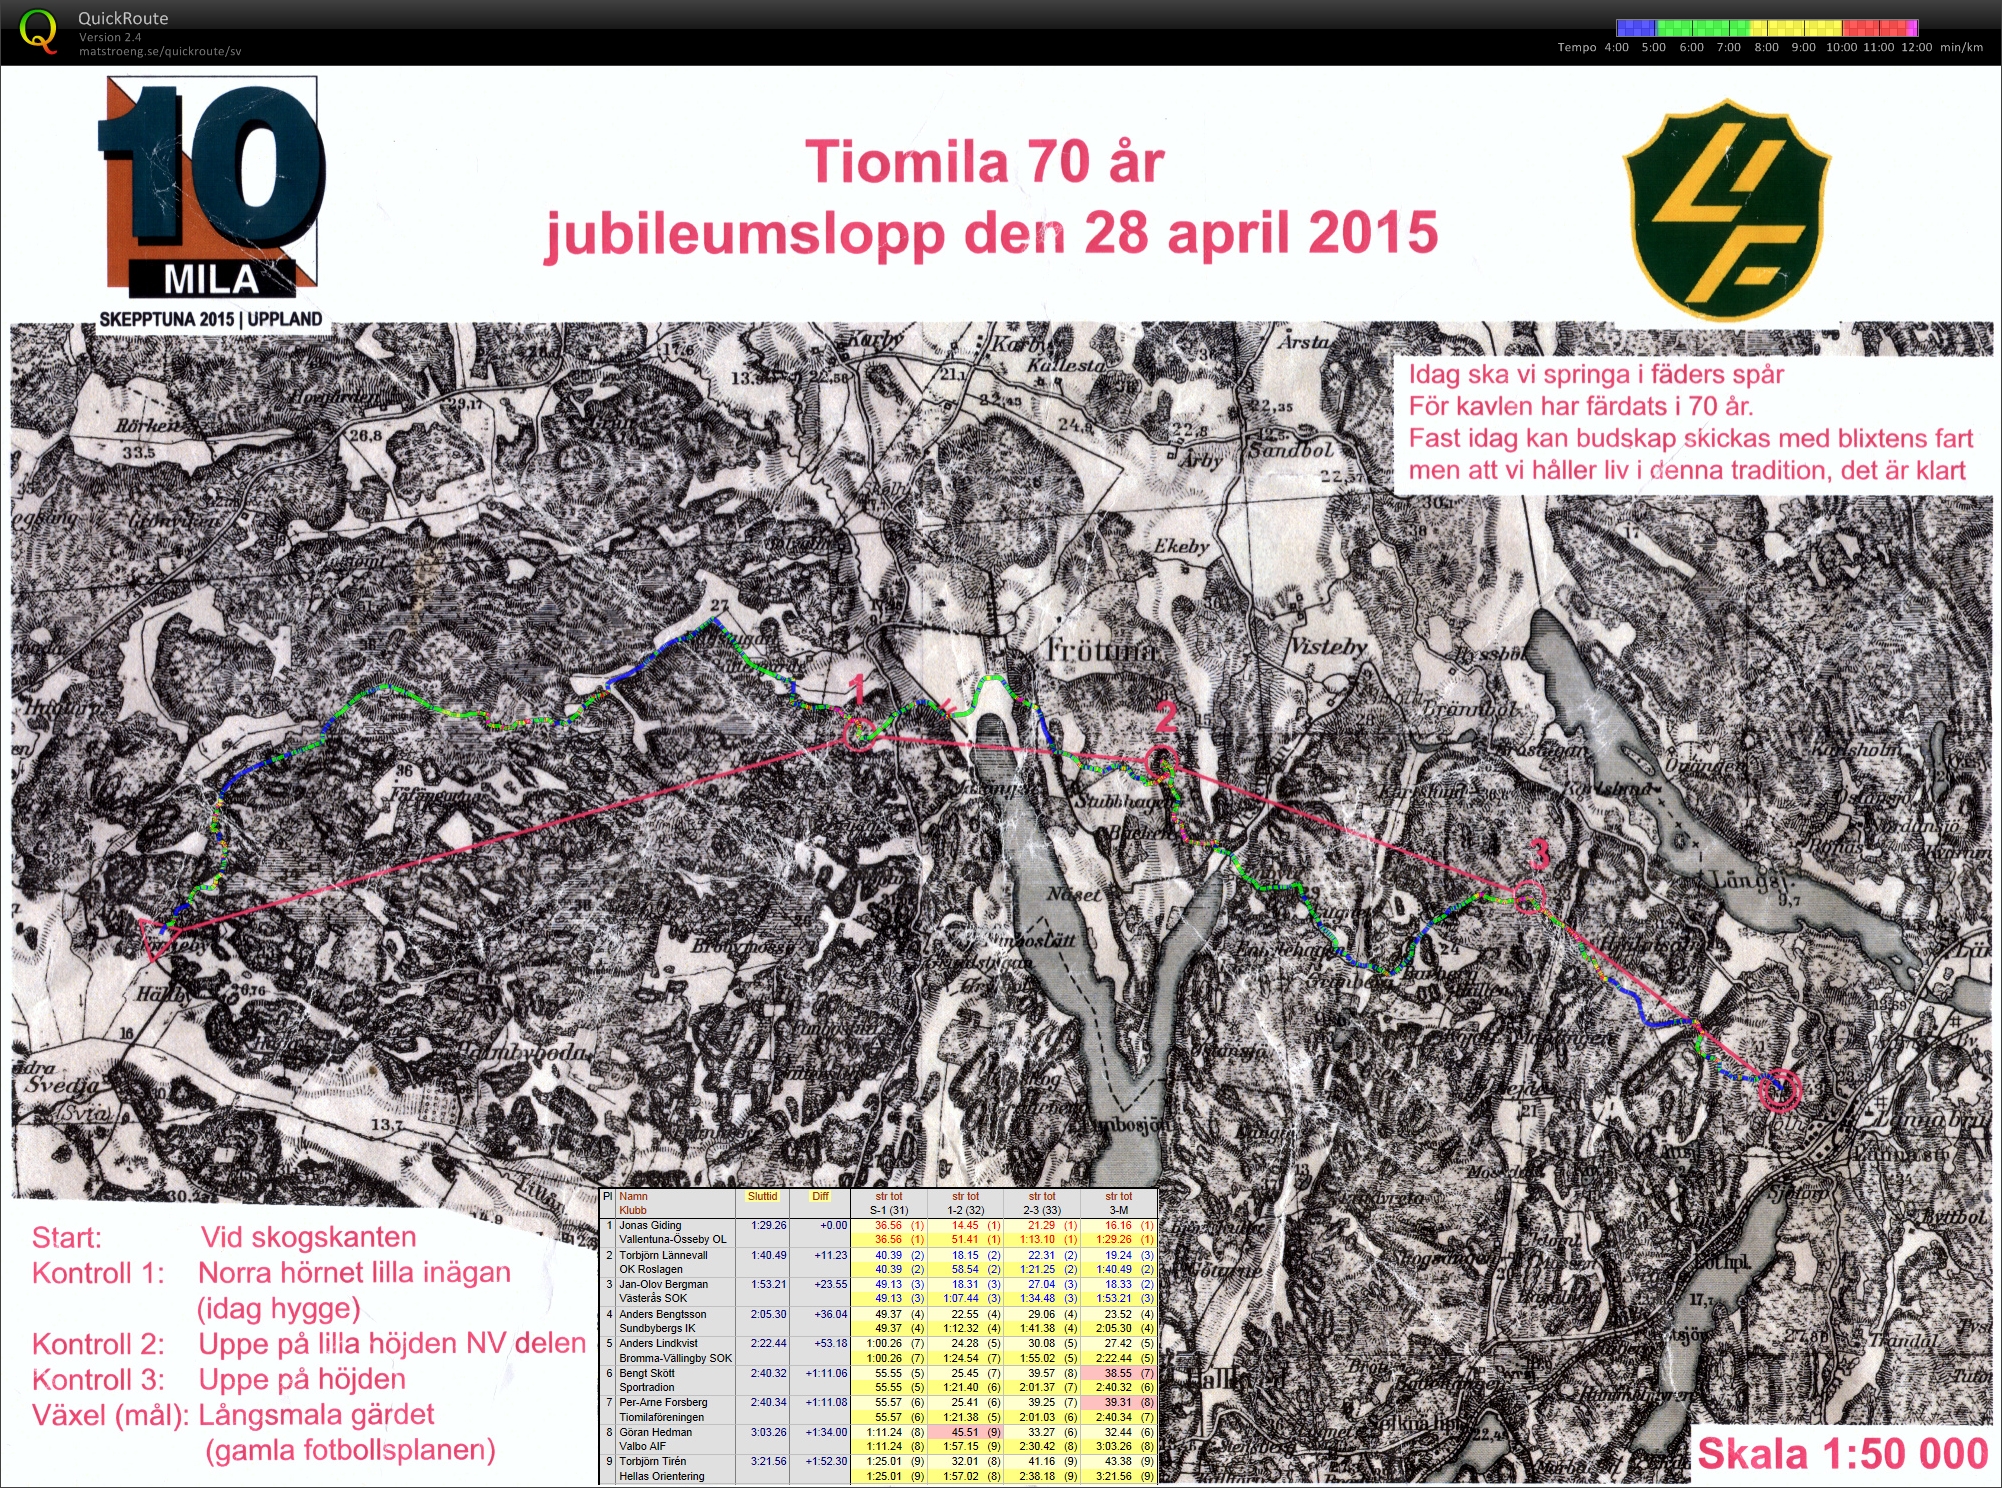 Tiomilas jubileumslopp (28/04/2015)